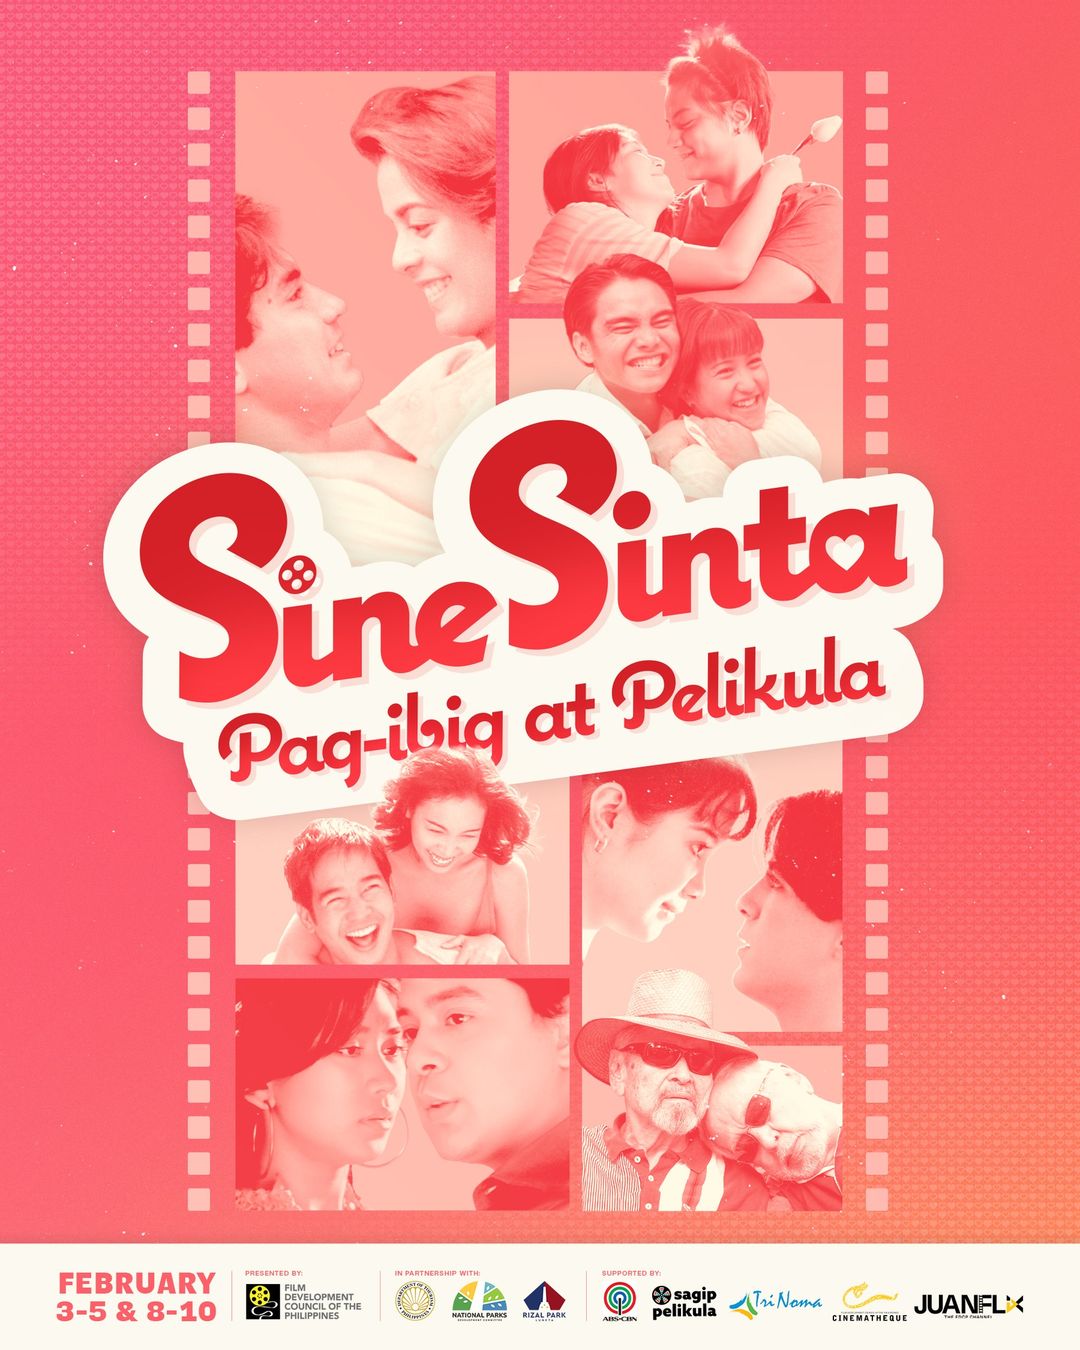 Sine Sinta Pag ibig at Pelikula poster